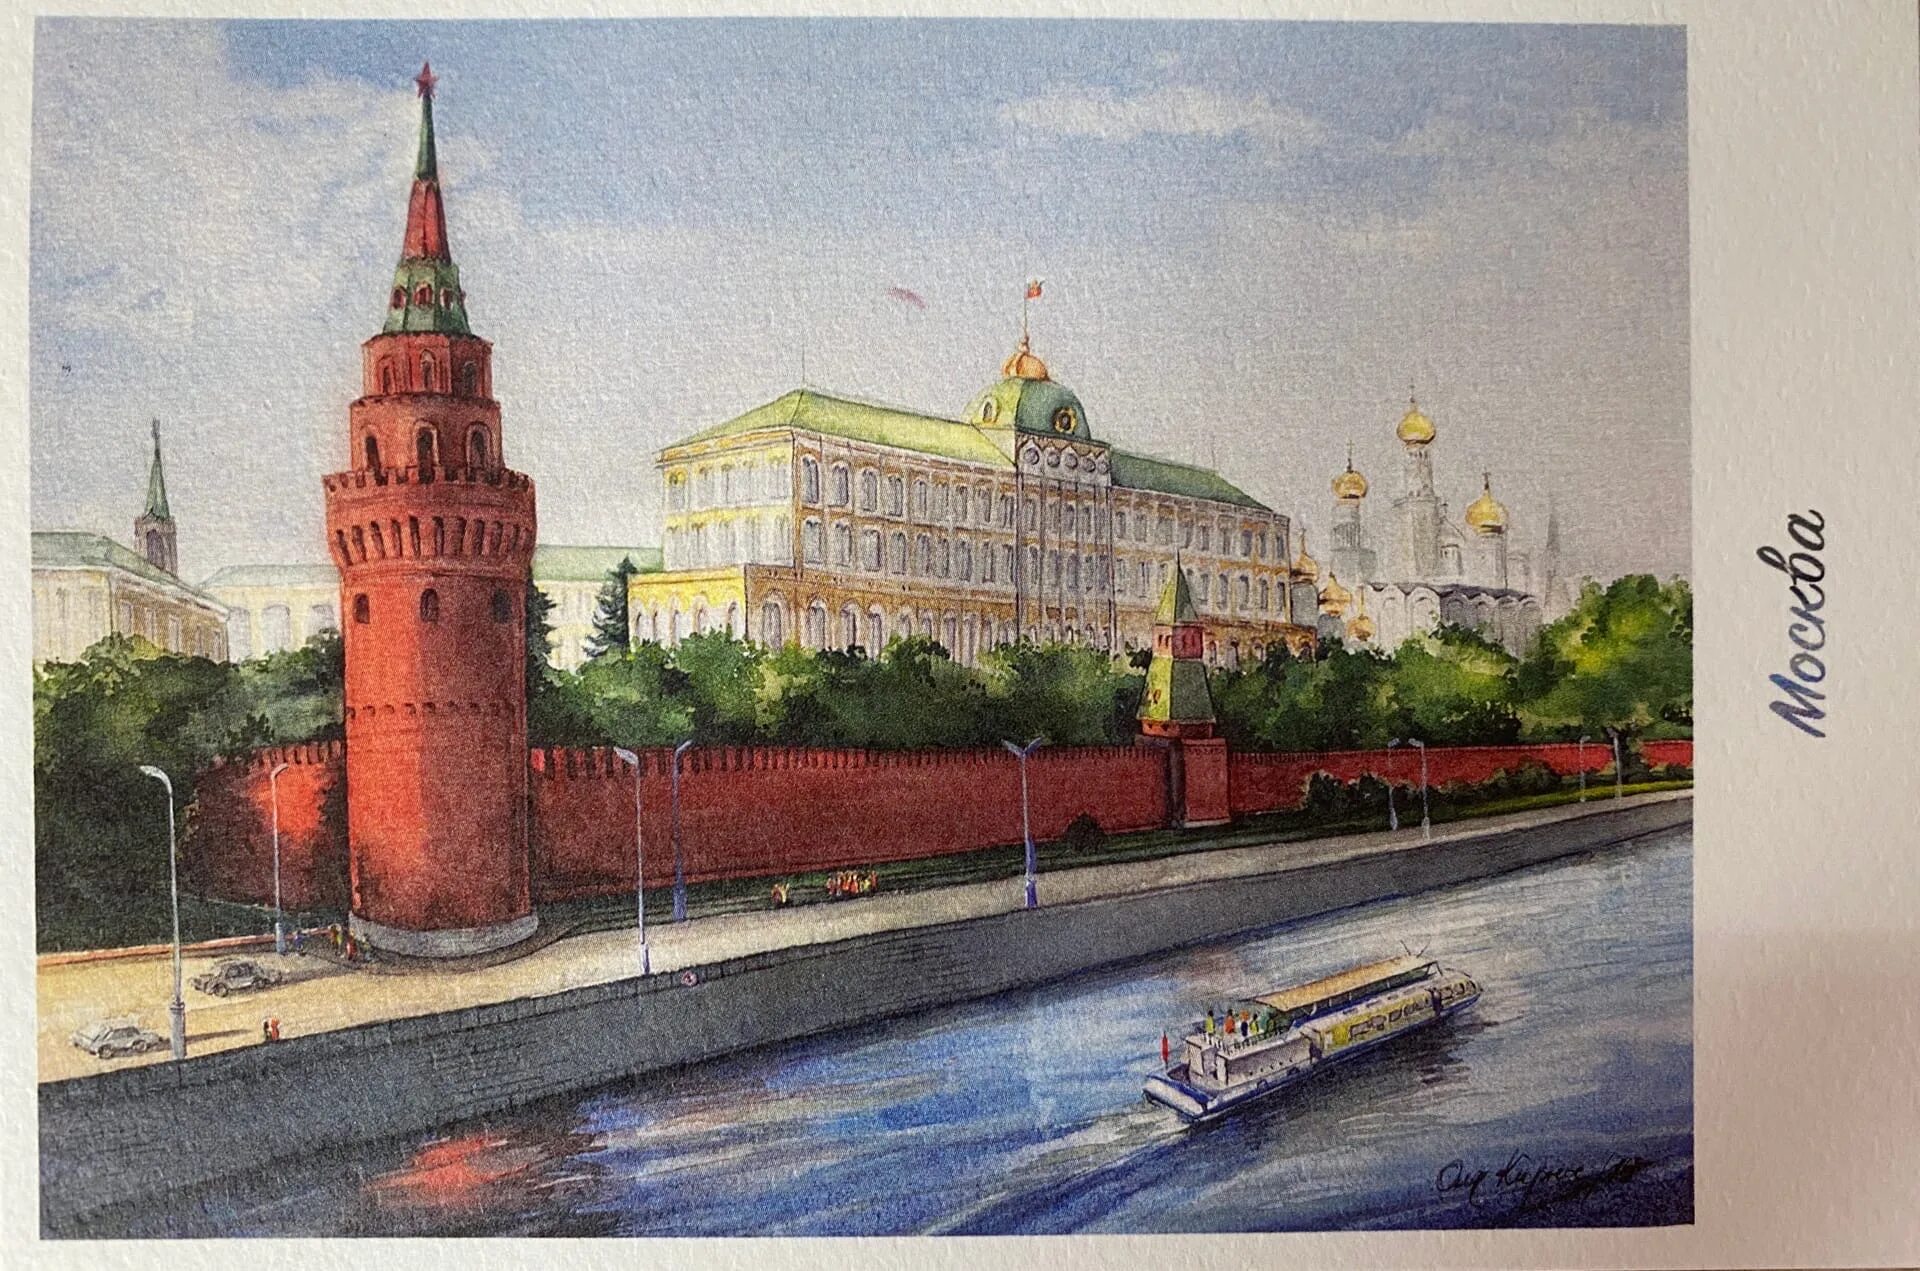 Иллюстрация кремля. Иллюстрации с видами Москвы. Кремль иллюстрация. Москва рисунок. Открытка с видом Кремля.